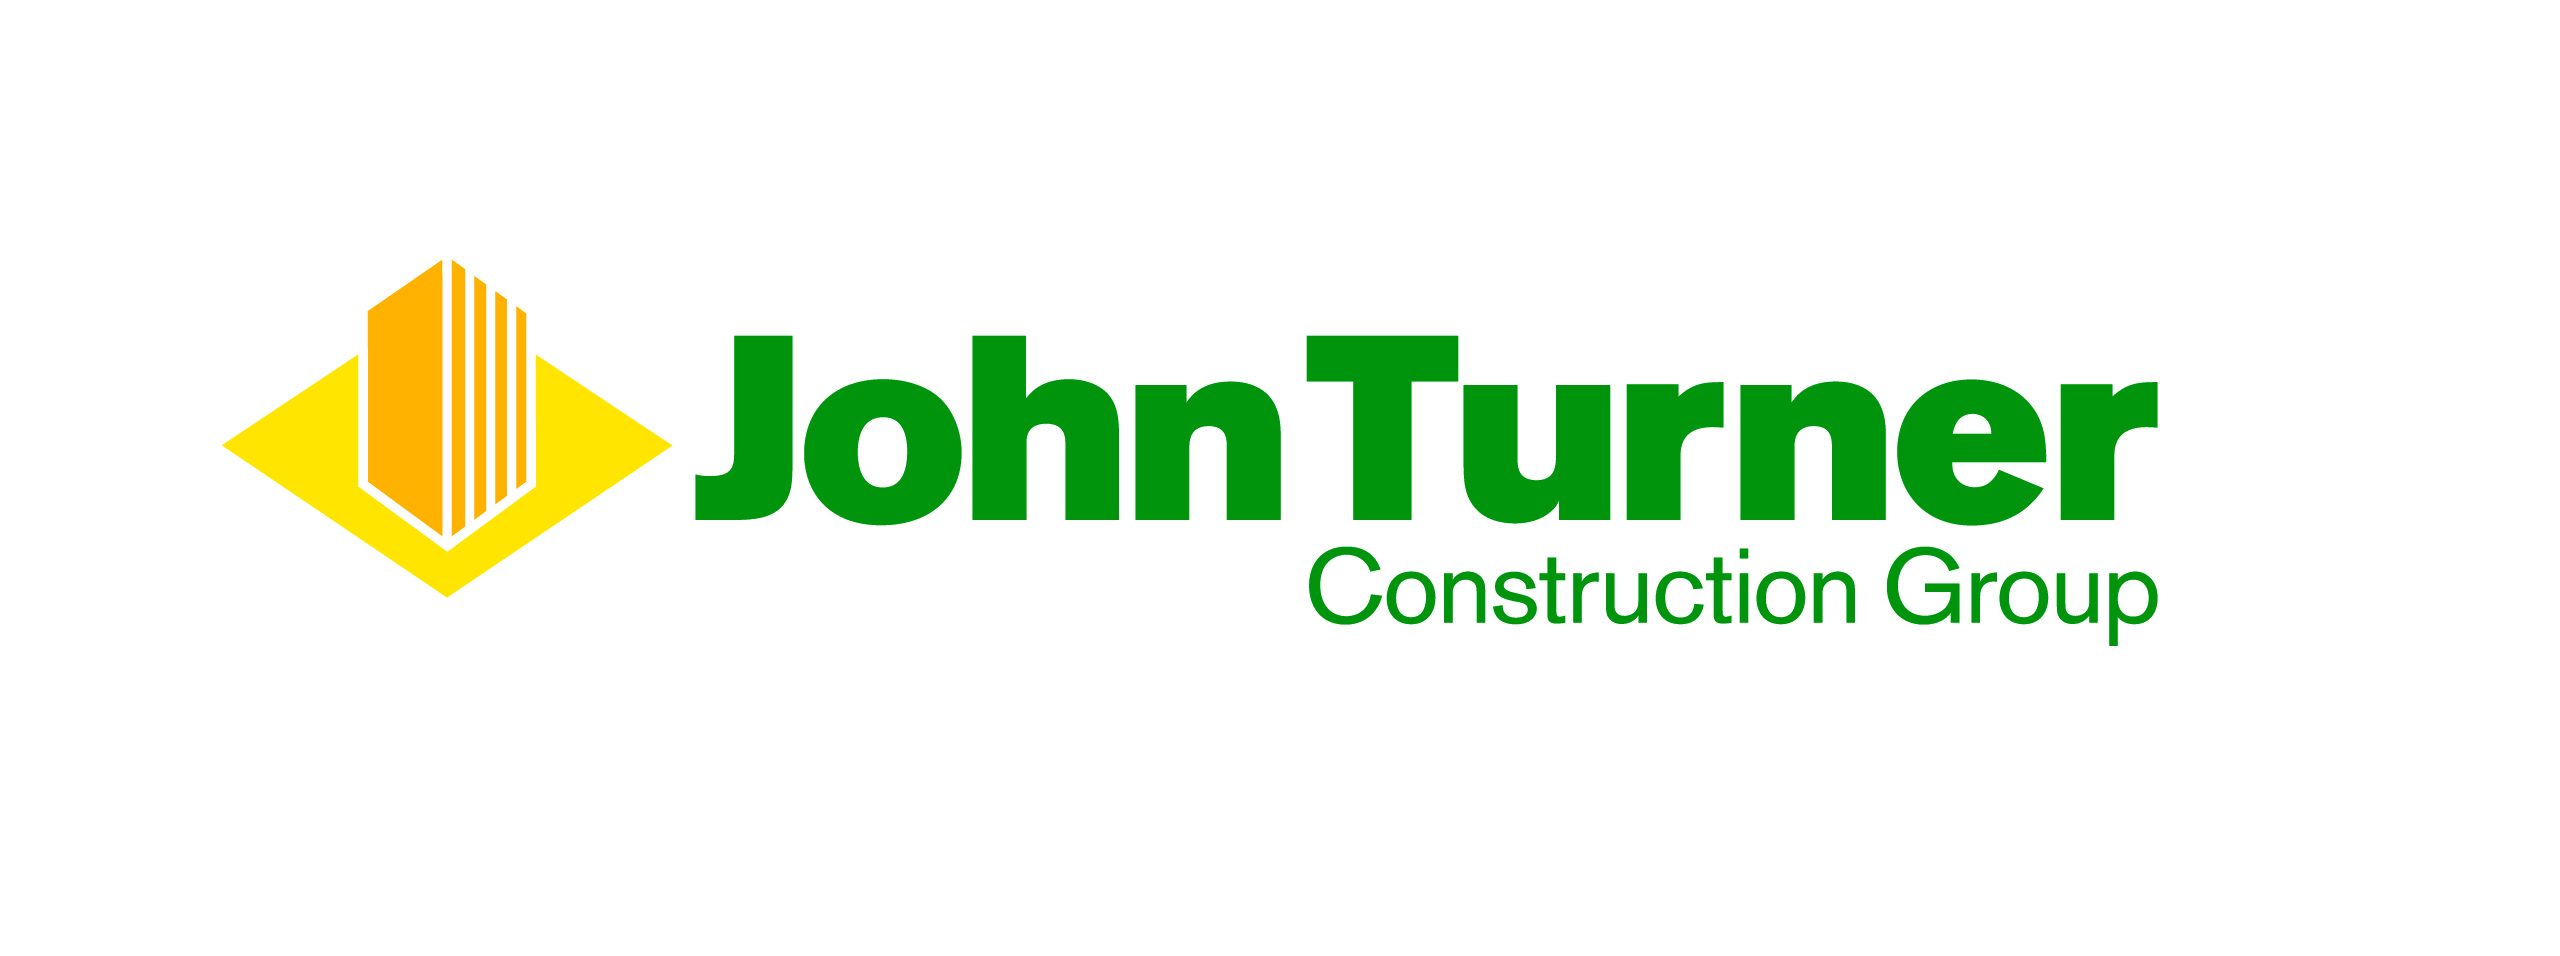 logo for John Turner Construction Group Ltd